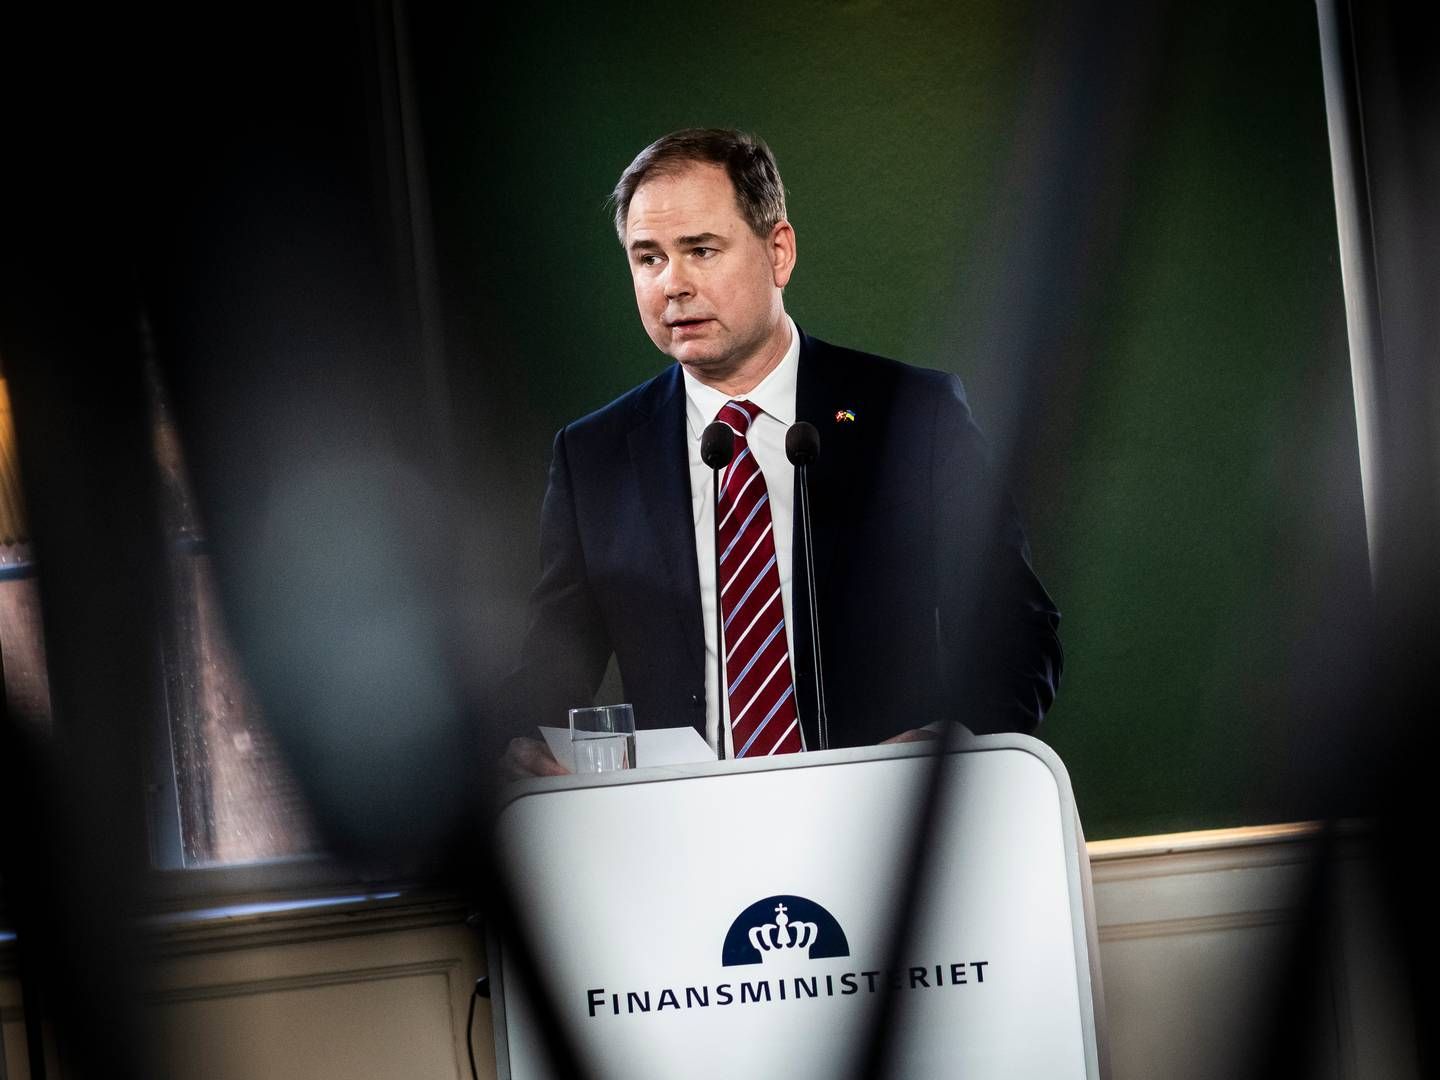 Finansminister Nicolai Wammen (S) mener aftalen med kommunerne er landet på et ansvarligt niveau. | Foto: Jonas Olufson